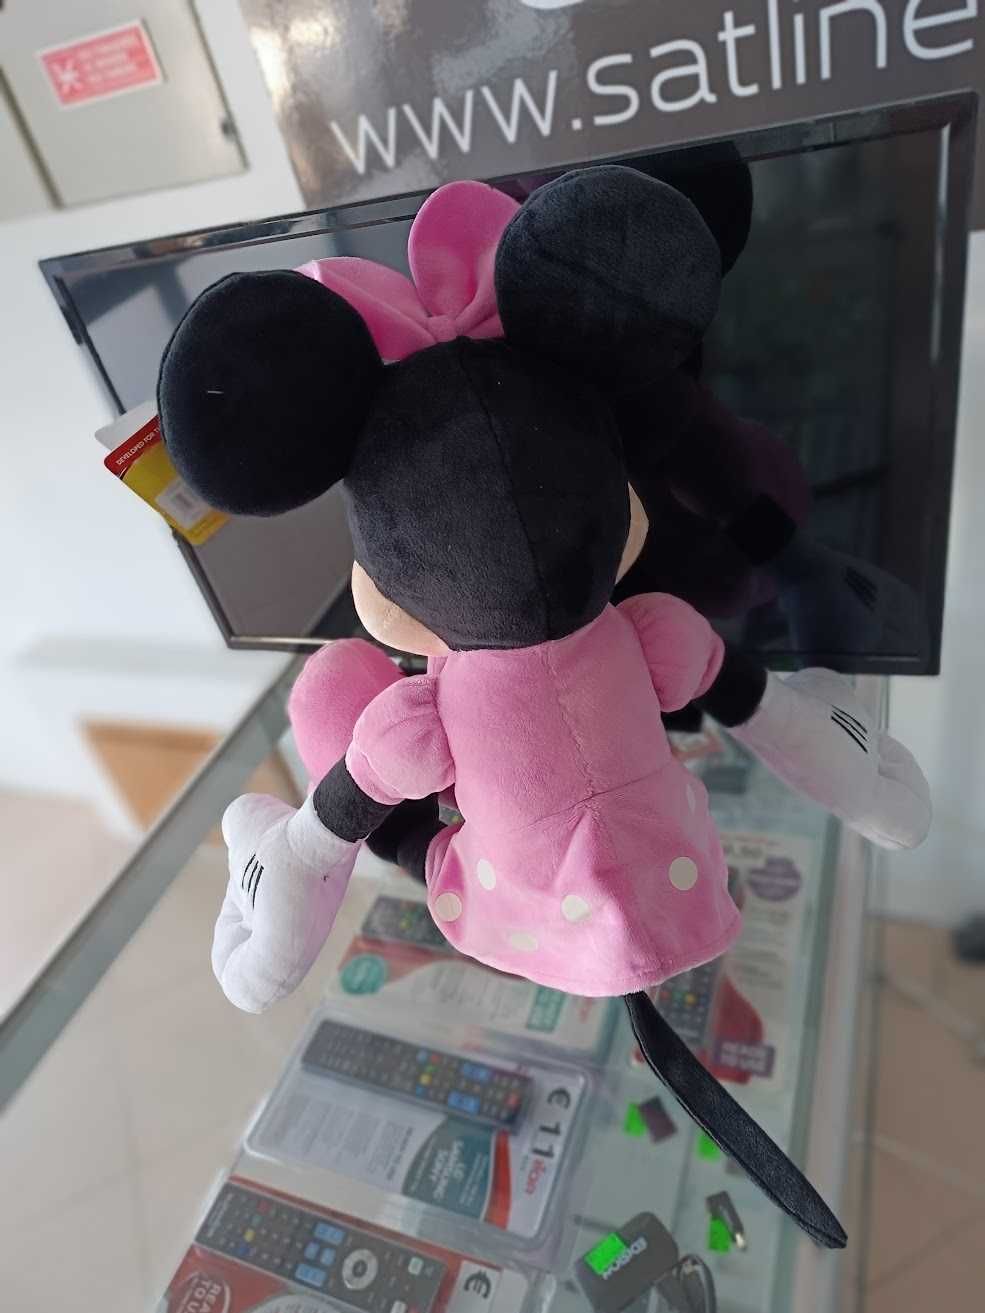 PROMO:Peluche Minnie Mouse s5 55cm(39cm sentado)